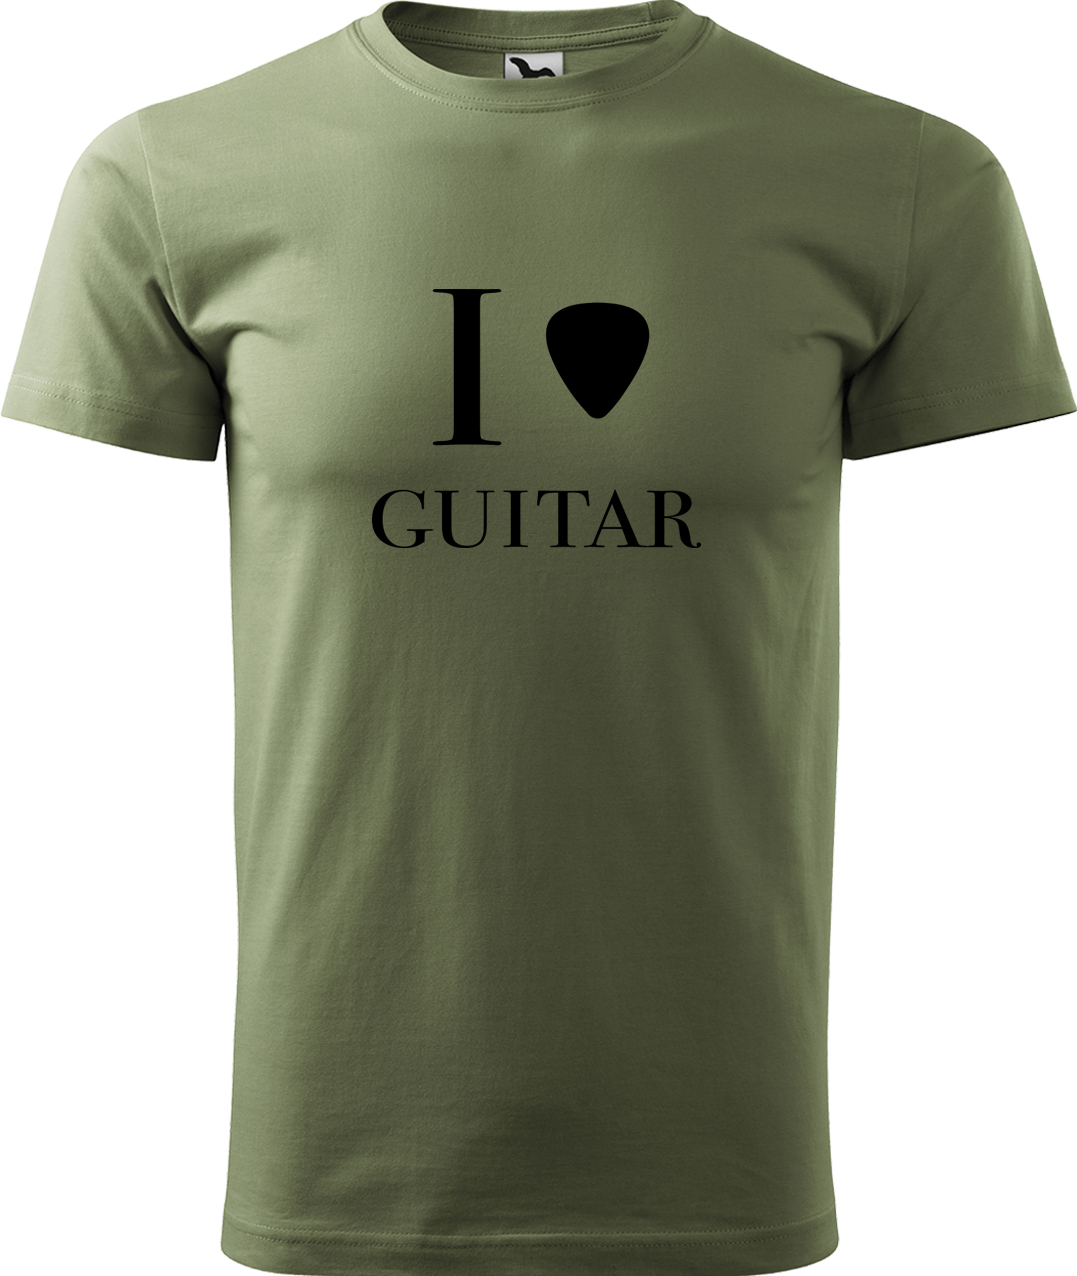 Pánské tričko s kytarou - I love guitar Velikost: M, Barva: Světlá khaki (28), Střih: pánský